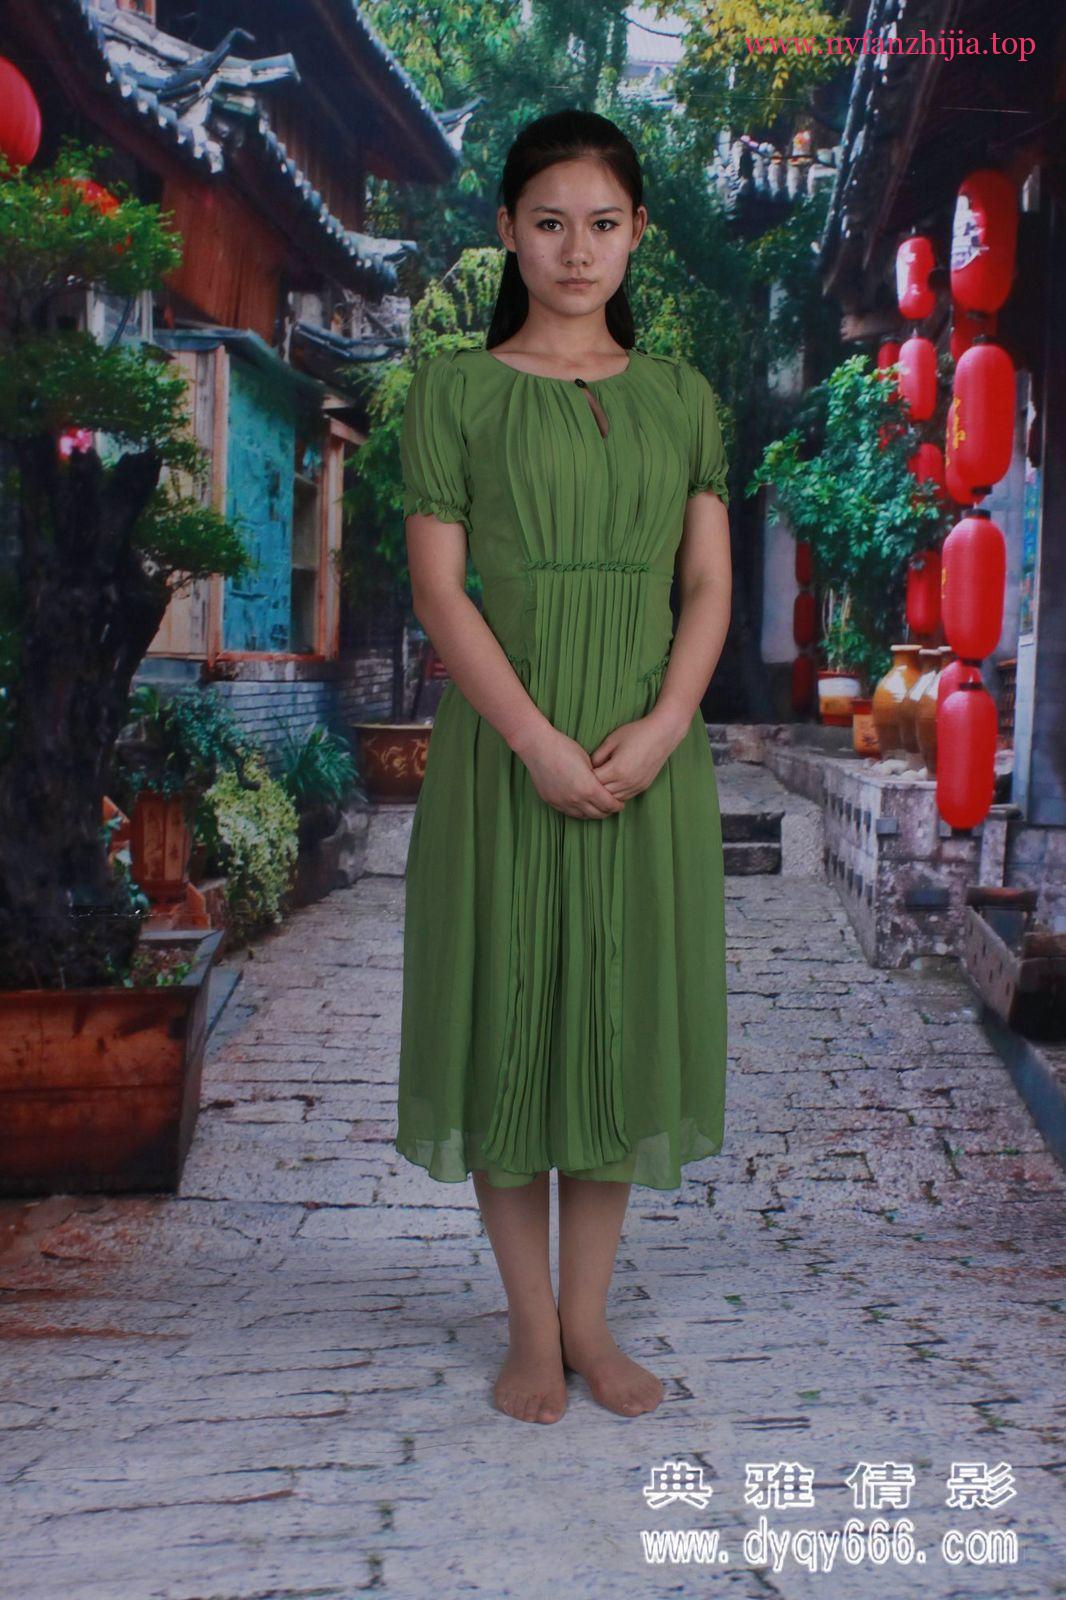 285-绿裙伊娜-典雅倩影